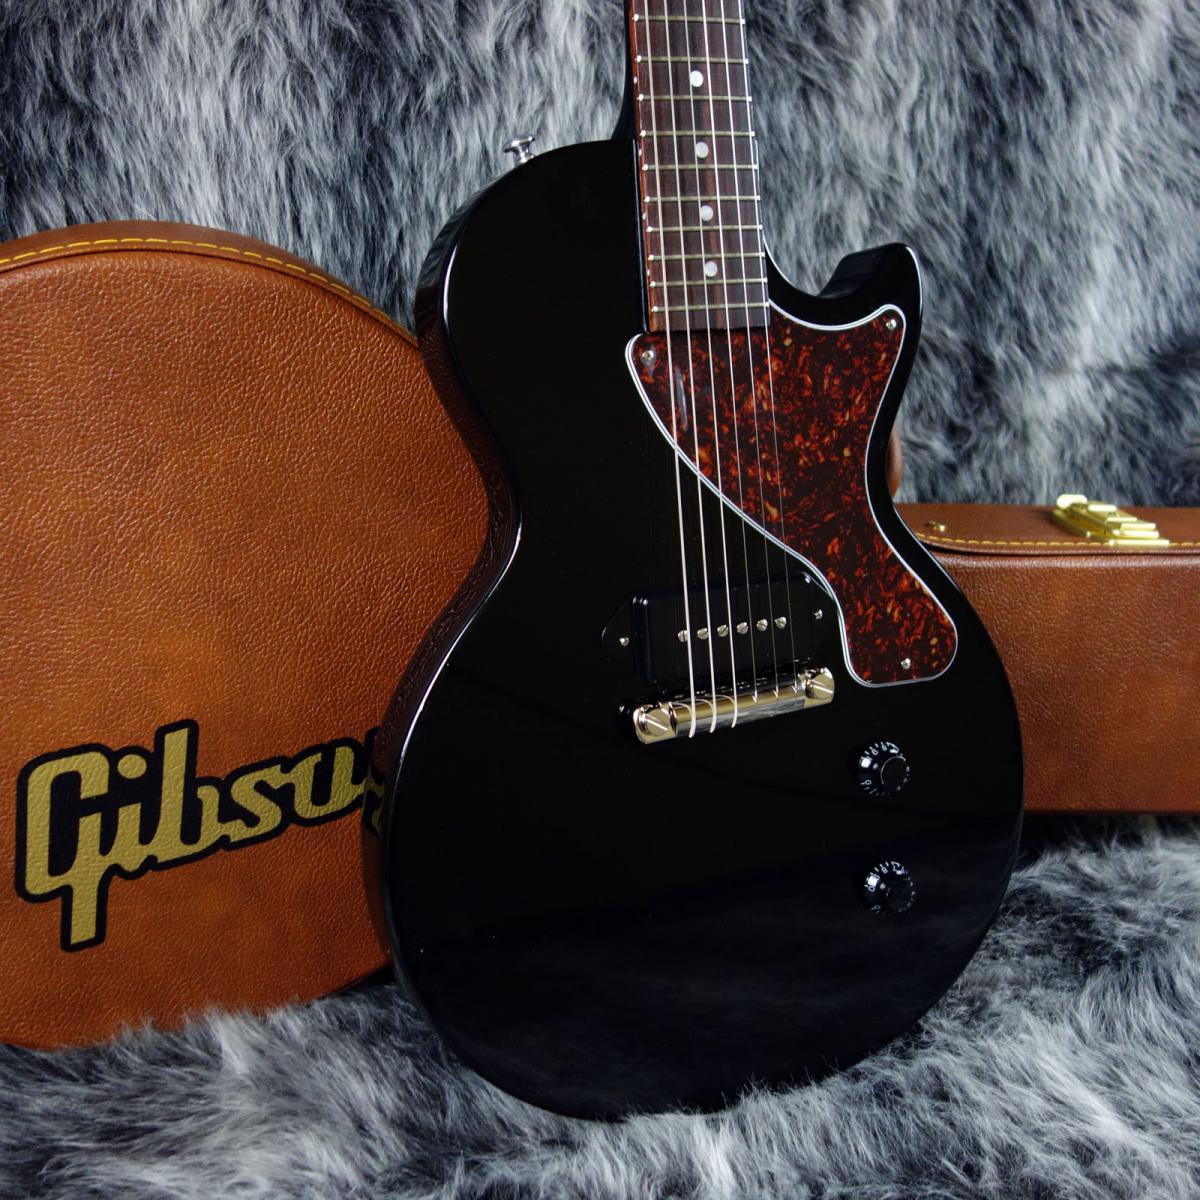 Gibson Les pual jr ギブソン レスポールジュニア-